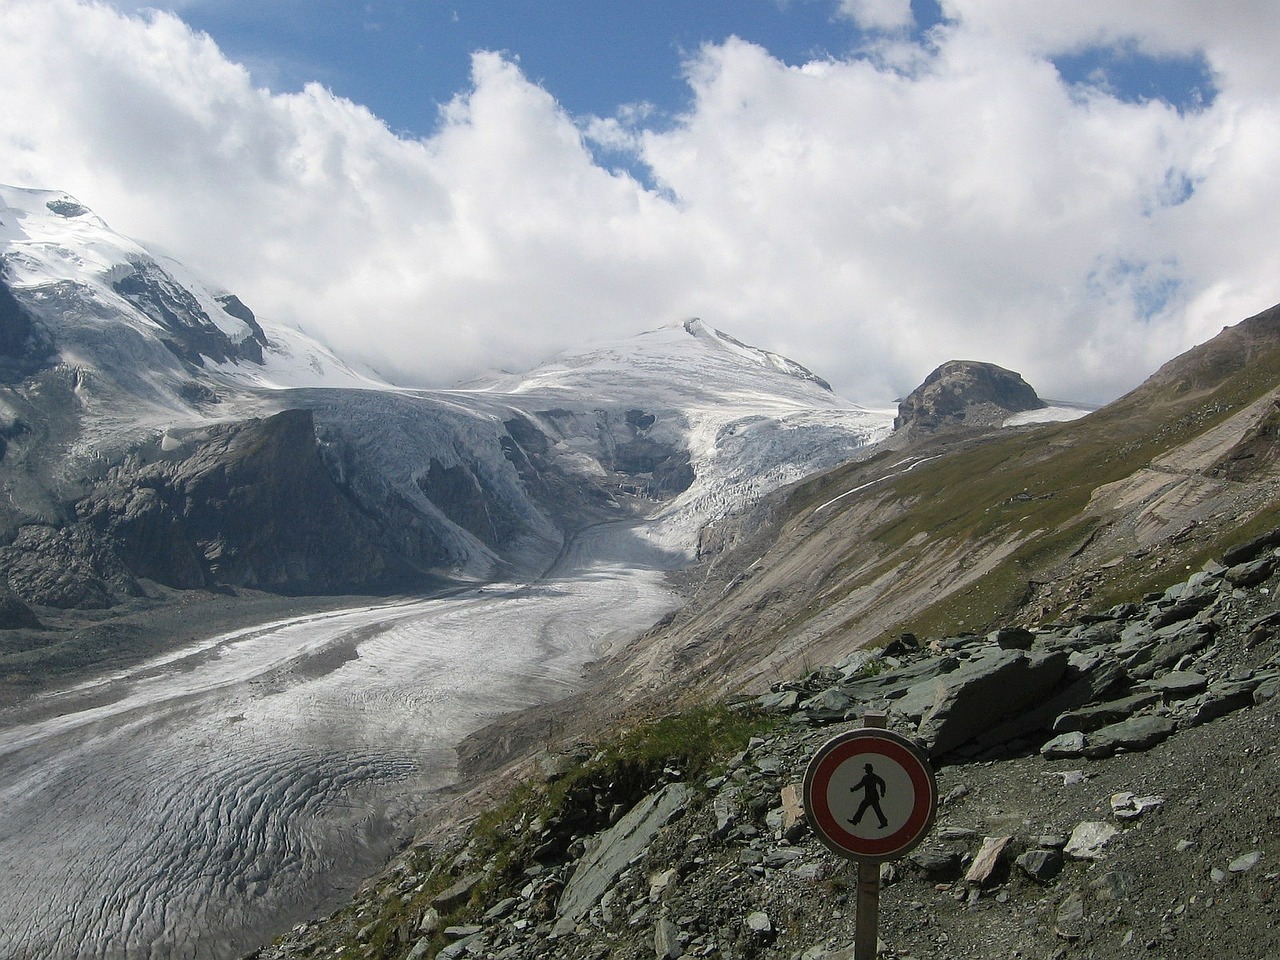 pasterze glacier glacier alpine free photo